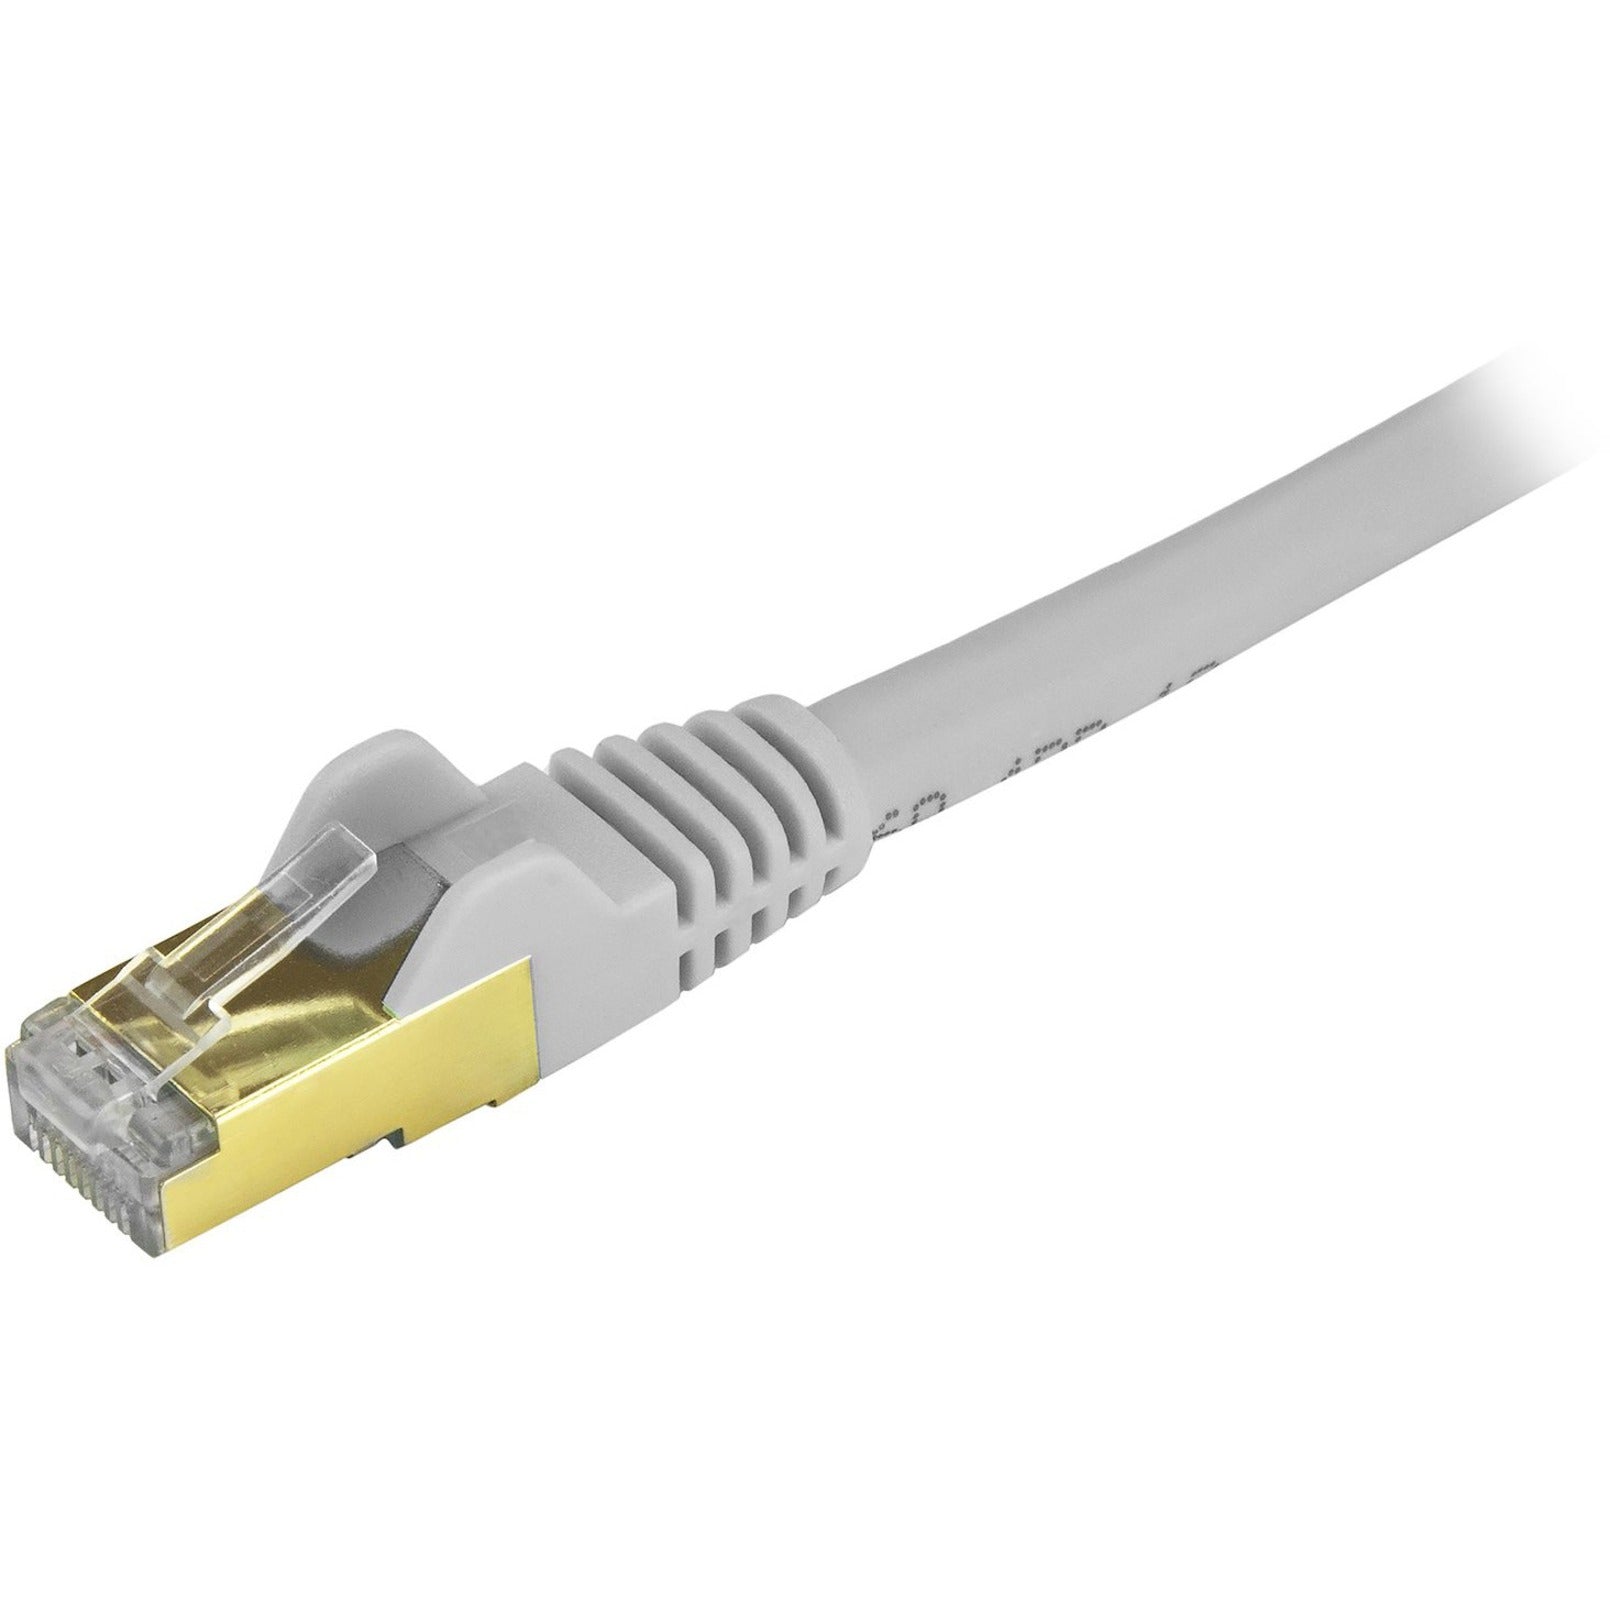 StarTech.com C6ASPAT20GR Cat6a Ethernet Patch Cable - Schermato (STP) - 20 ft. Grigio RJ45 senza inceppo - Cavo Ethernet lungo